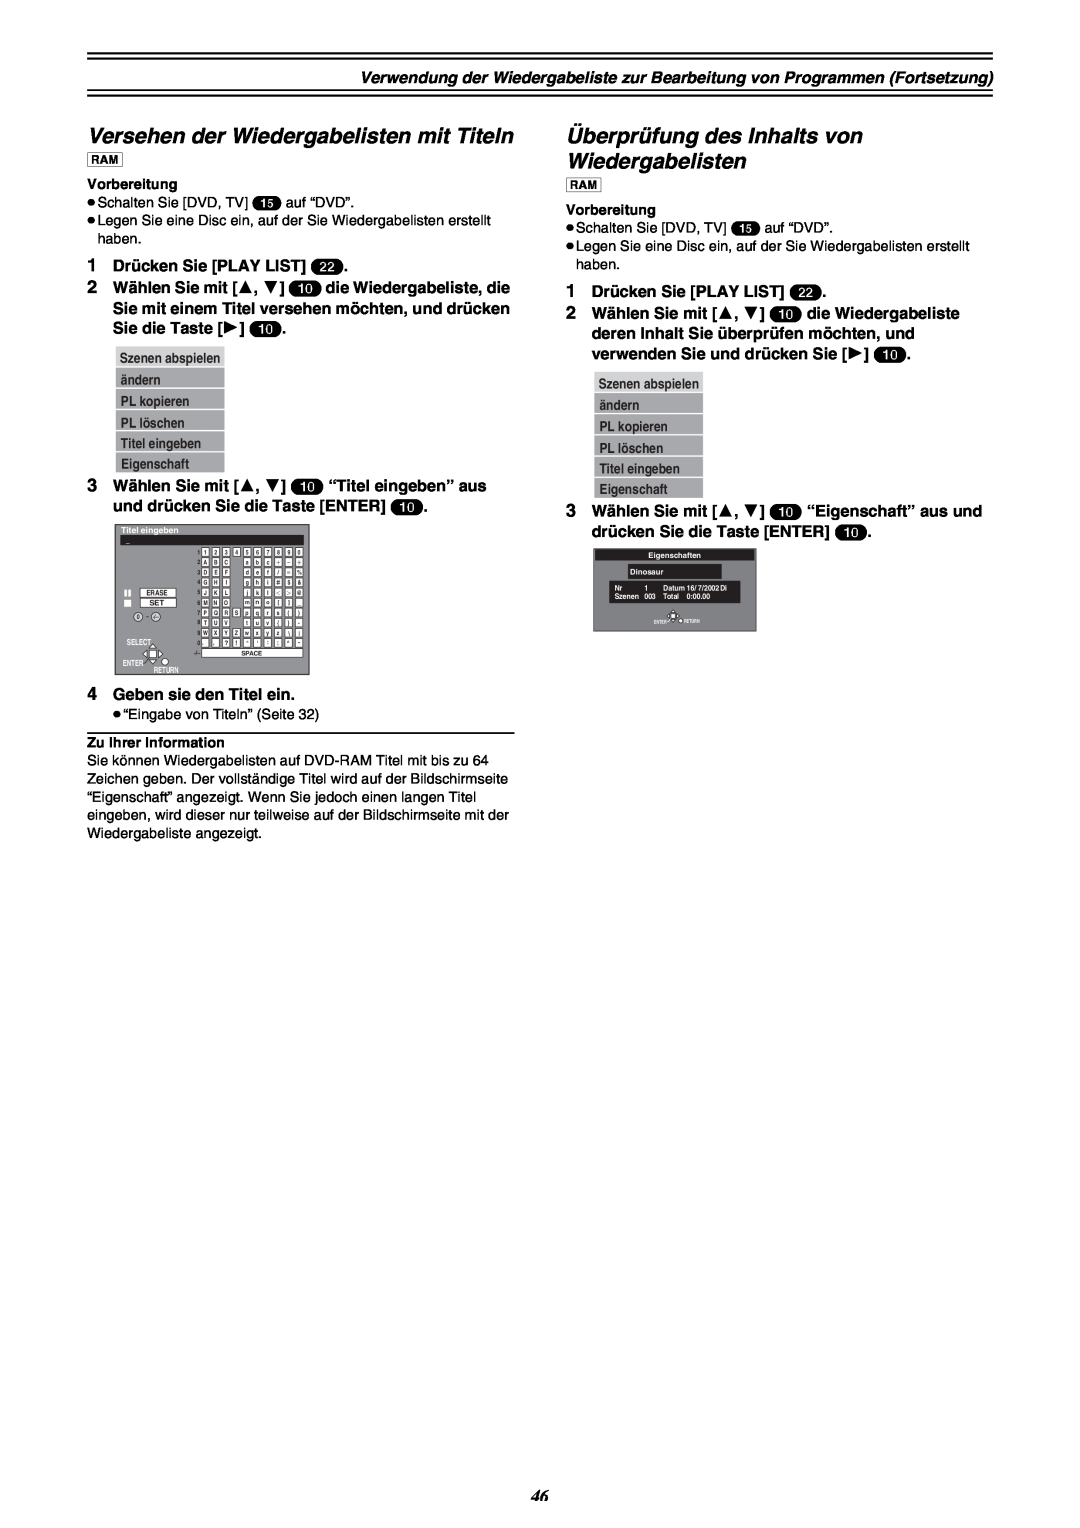 Panasonic DMR-E30 manual Versehen der Wiedergabelisten mit Titeln, Überprüfung des Inhalts von Wiedergabelisten 